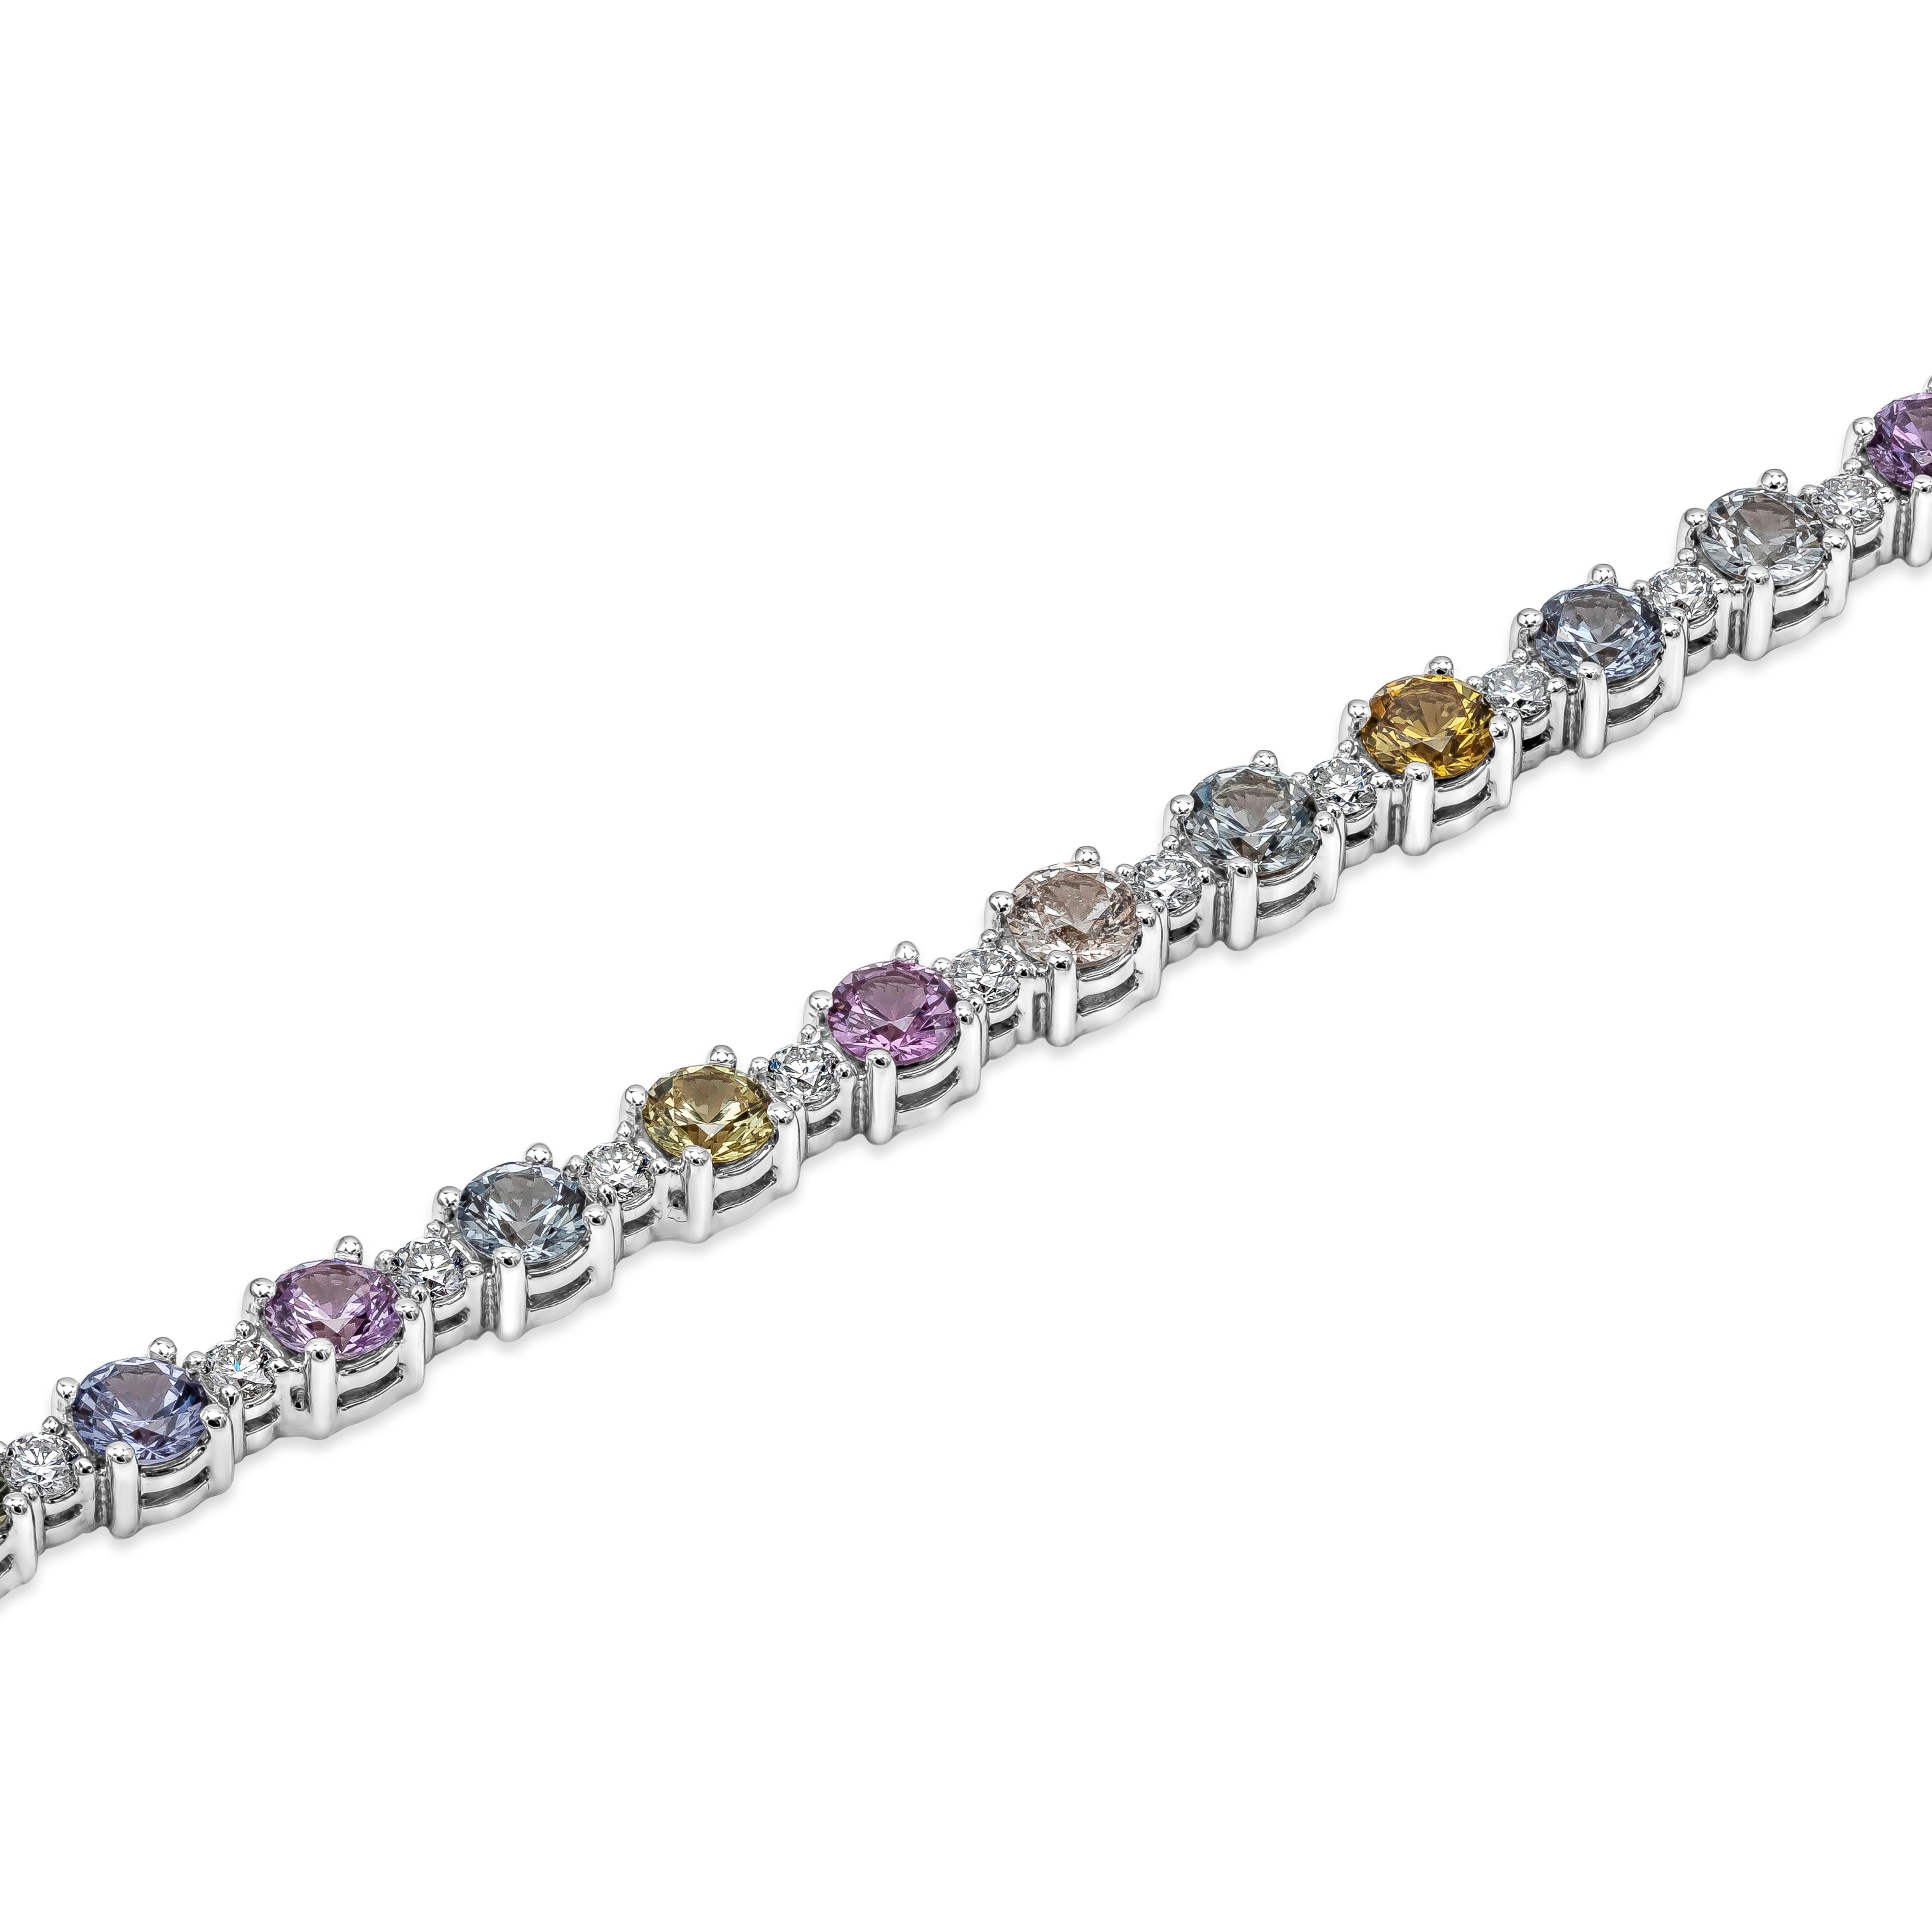 Ce bracelet de tennis unique et élégant présente une rangée de saphirs multicolores de forme ronde, régulièrement espacés par des diamants ronds de taille brillant. Les saphirs pèsent 6,35 carats au total, avec une pureté VVS. Les diamants pèsent